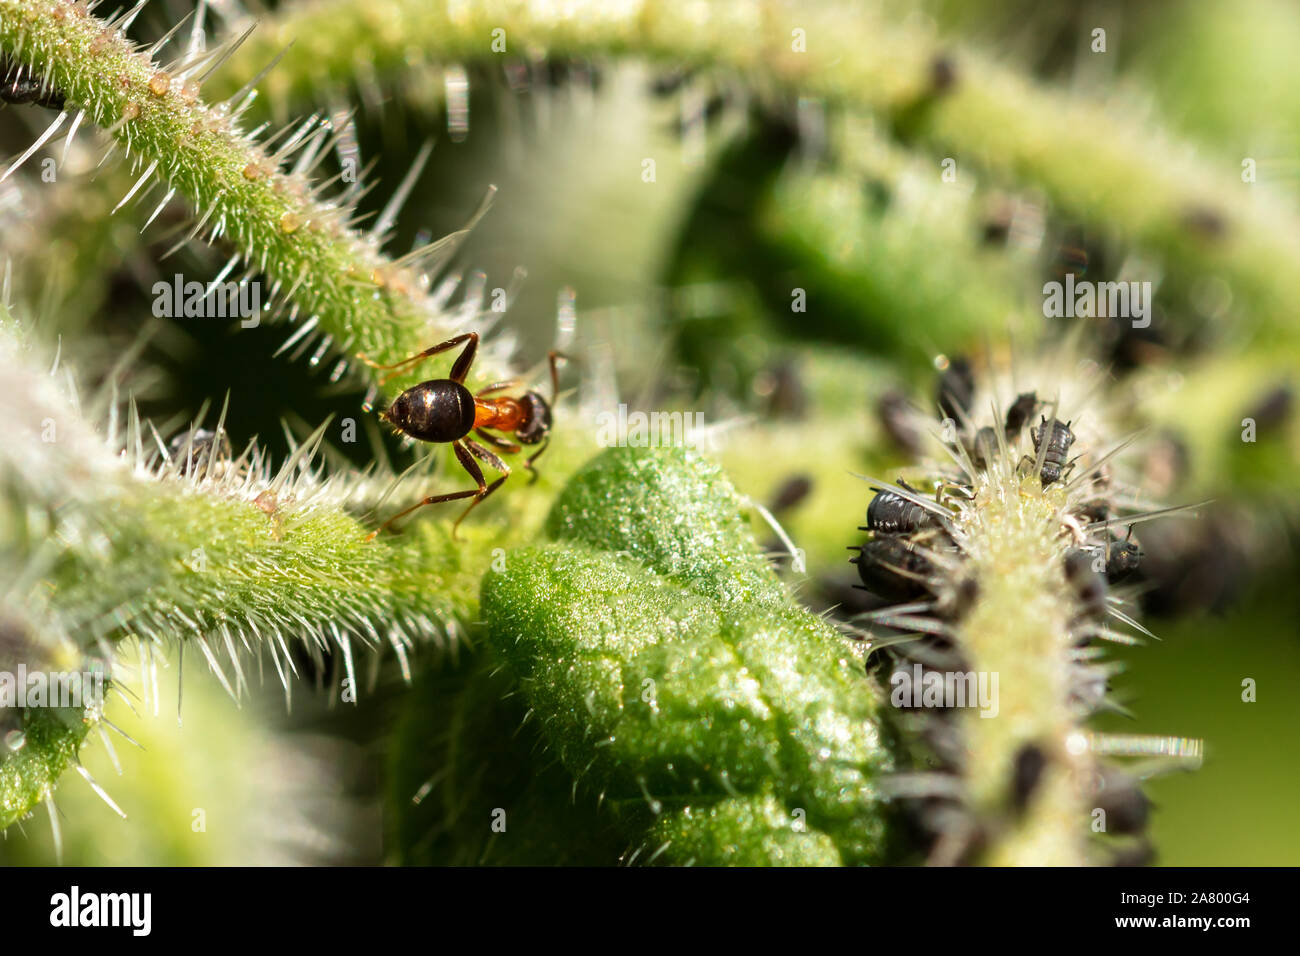 Symbiose, Teamarbeit und Zusammenleben von Insekten, Blattläuse und Ameisen auf einer grünen Pflanze, Nahaufnahme Stockfoto